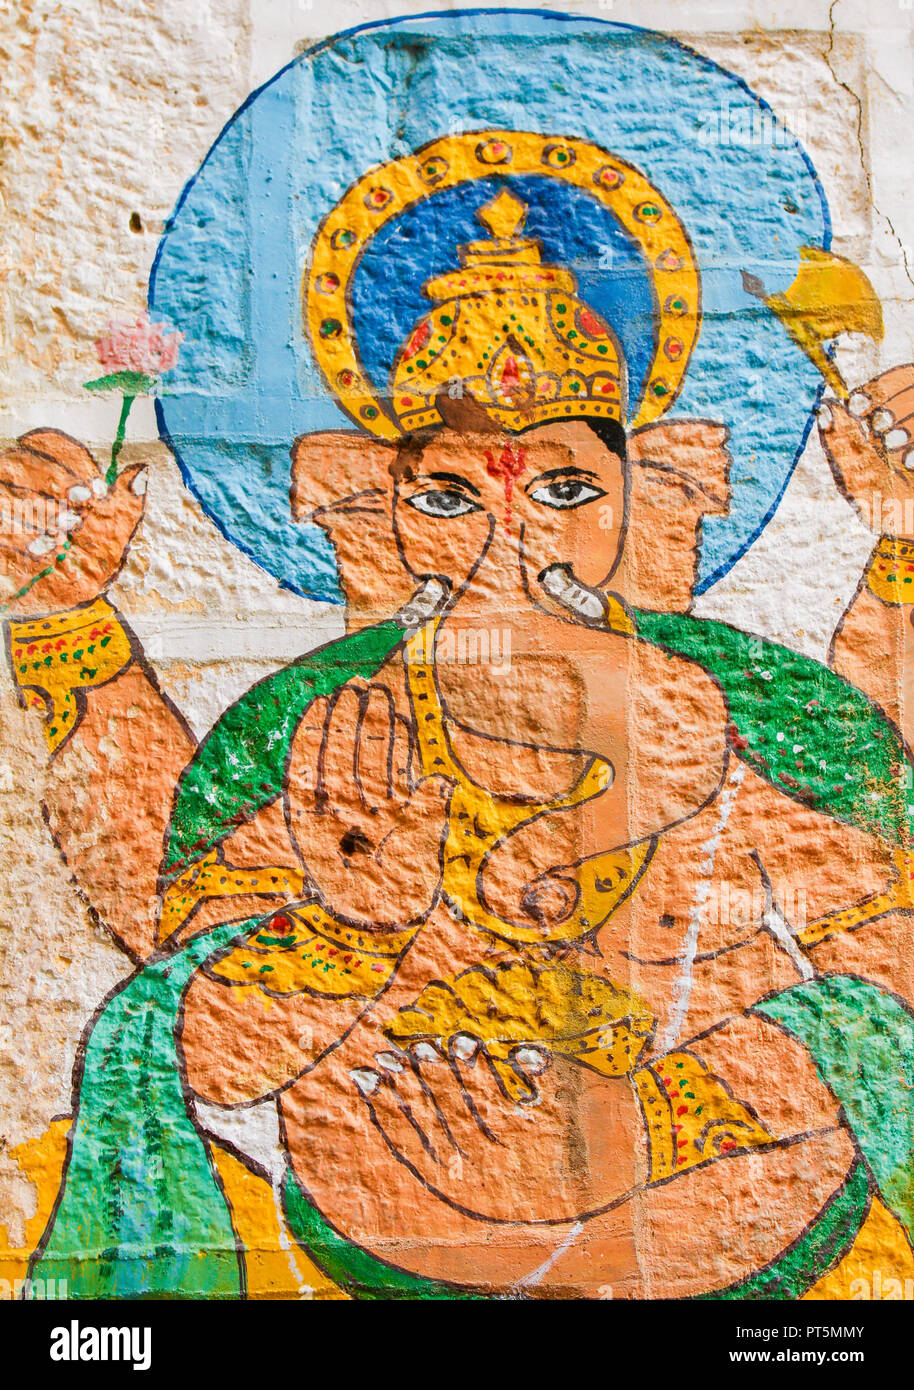 La peinture murale de la célèbre divinité Hindy Ganesha dans Udaipur, Rajasthan, Inde. Banque D'Images